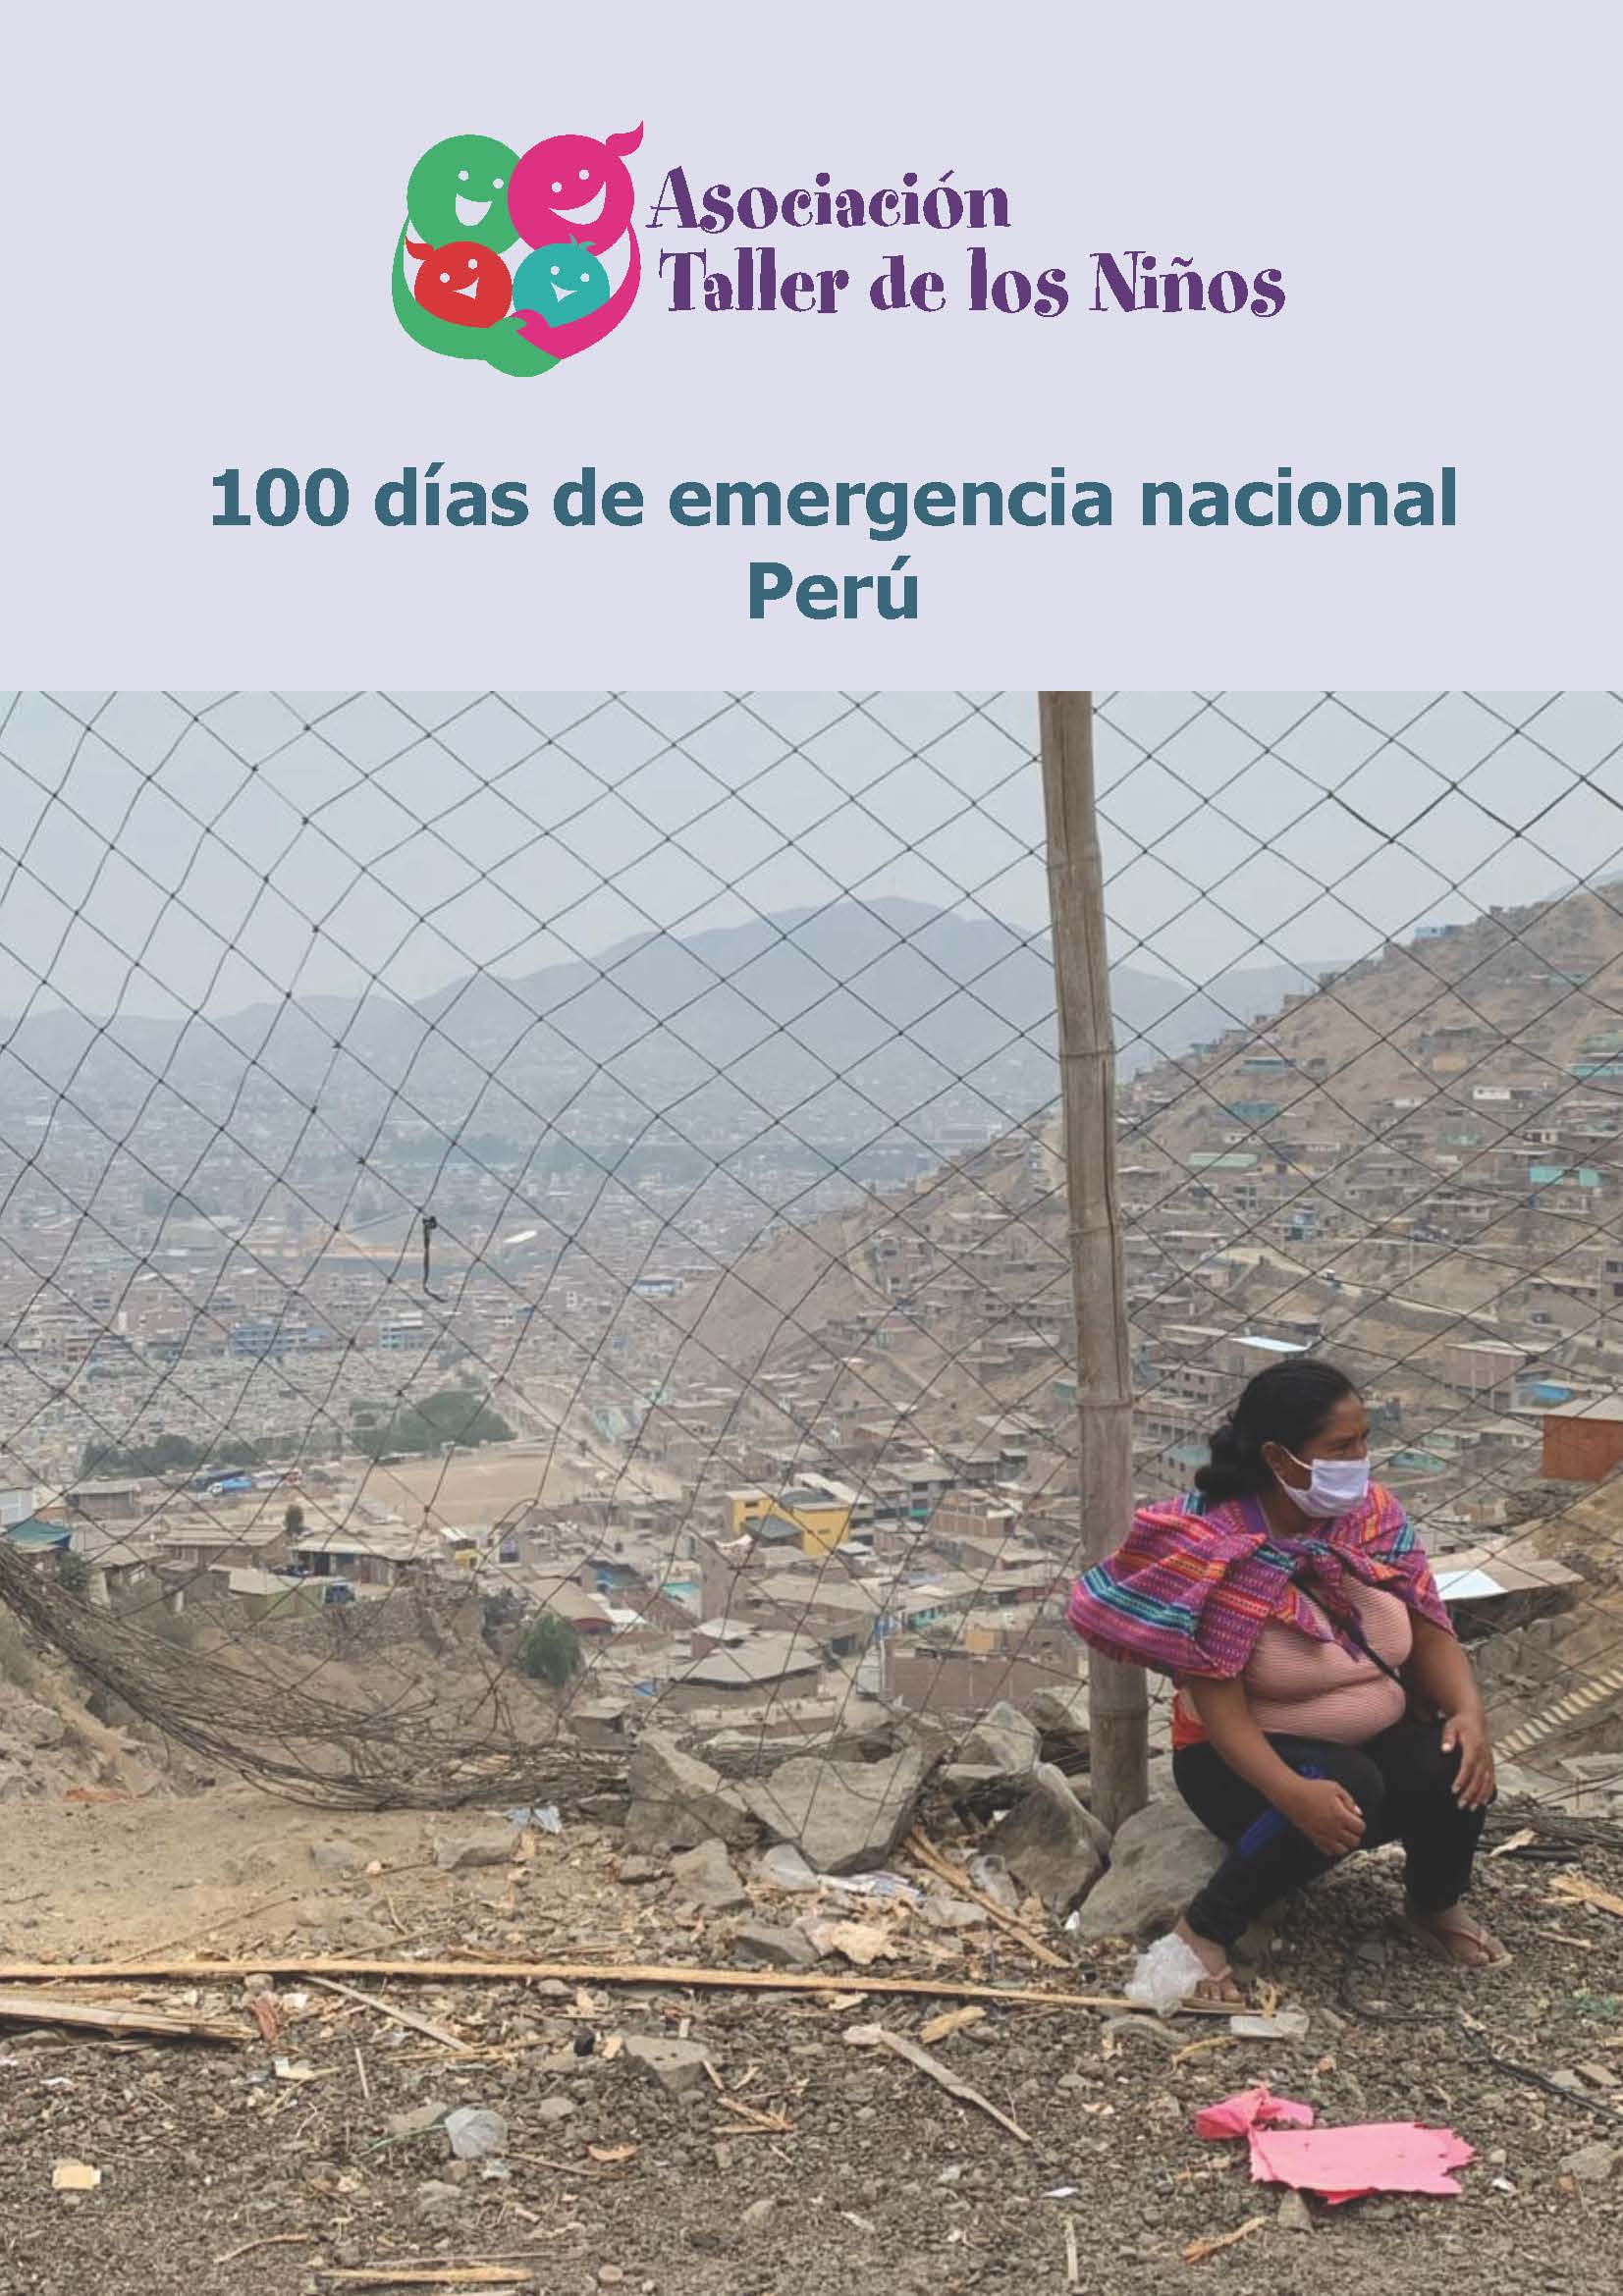 Nouvelles du Pérou et en particulier de Taller de los Niños